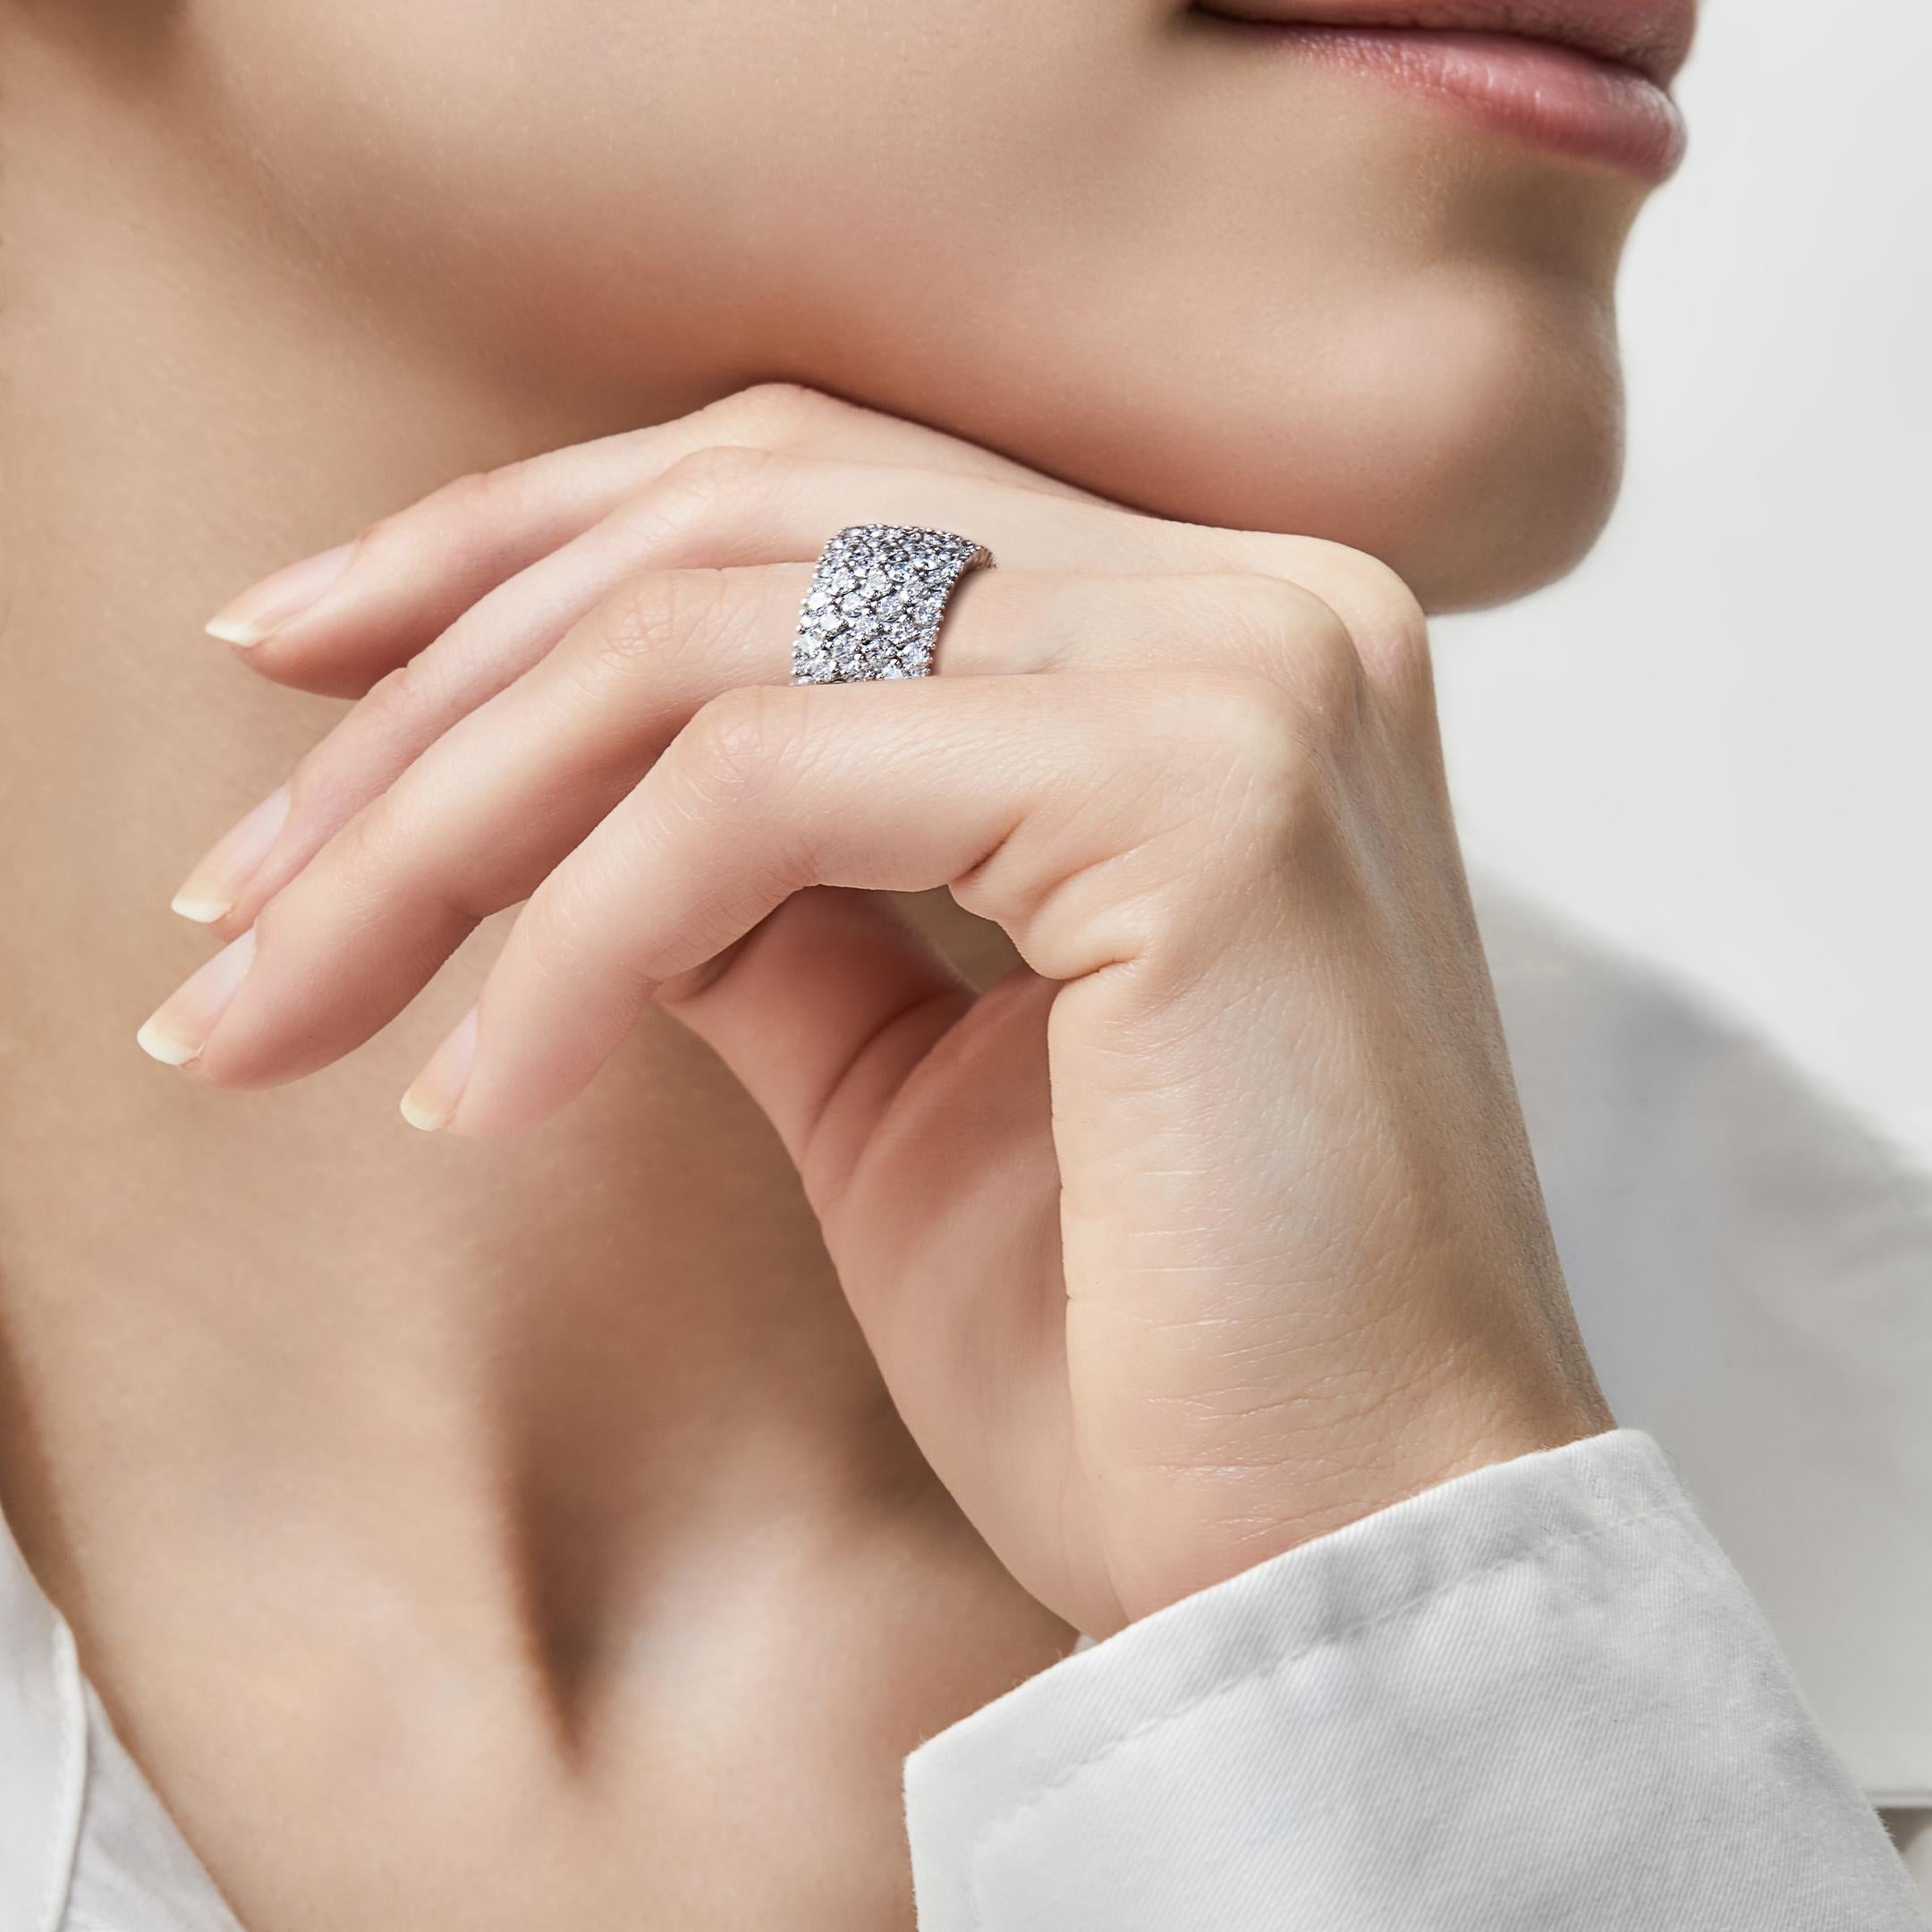 Eine flexible Diamantenfassade verleiht dem Stretchy Diamond Tapestry Ring den Anschein, dass die Steine ineinander verwoben sind. Die flexible Konstruktion aus 18-karätigem Weißgold bietet unvergleichlichen Komfort in diesem Modell, das sich leicht